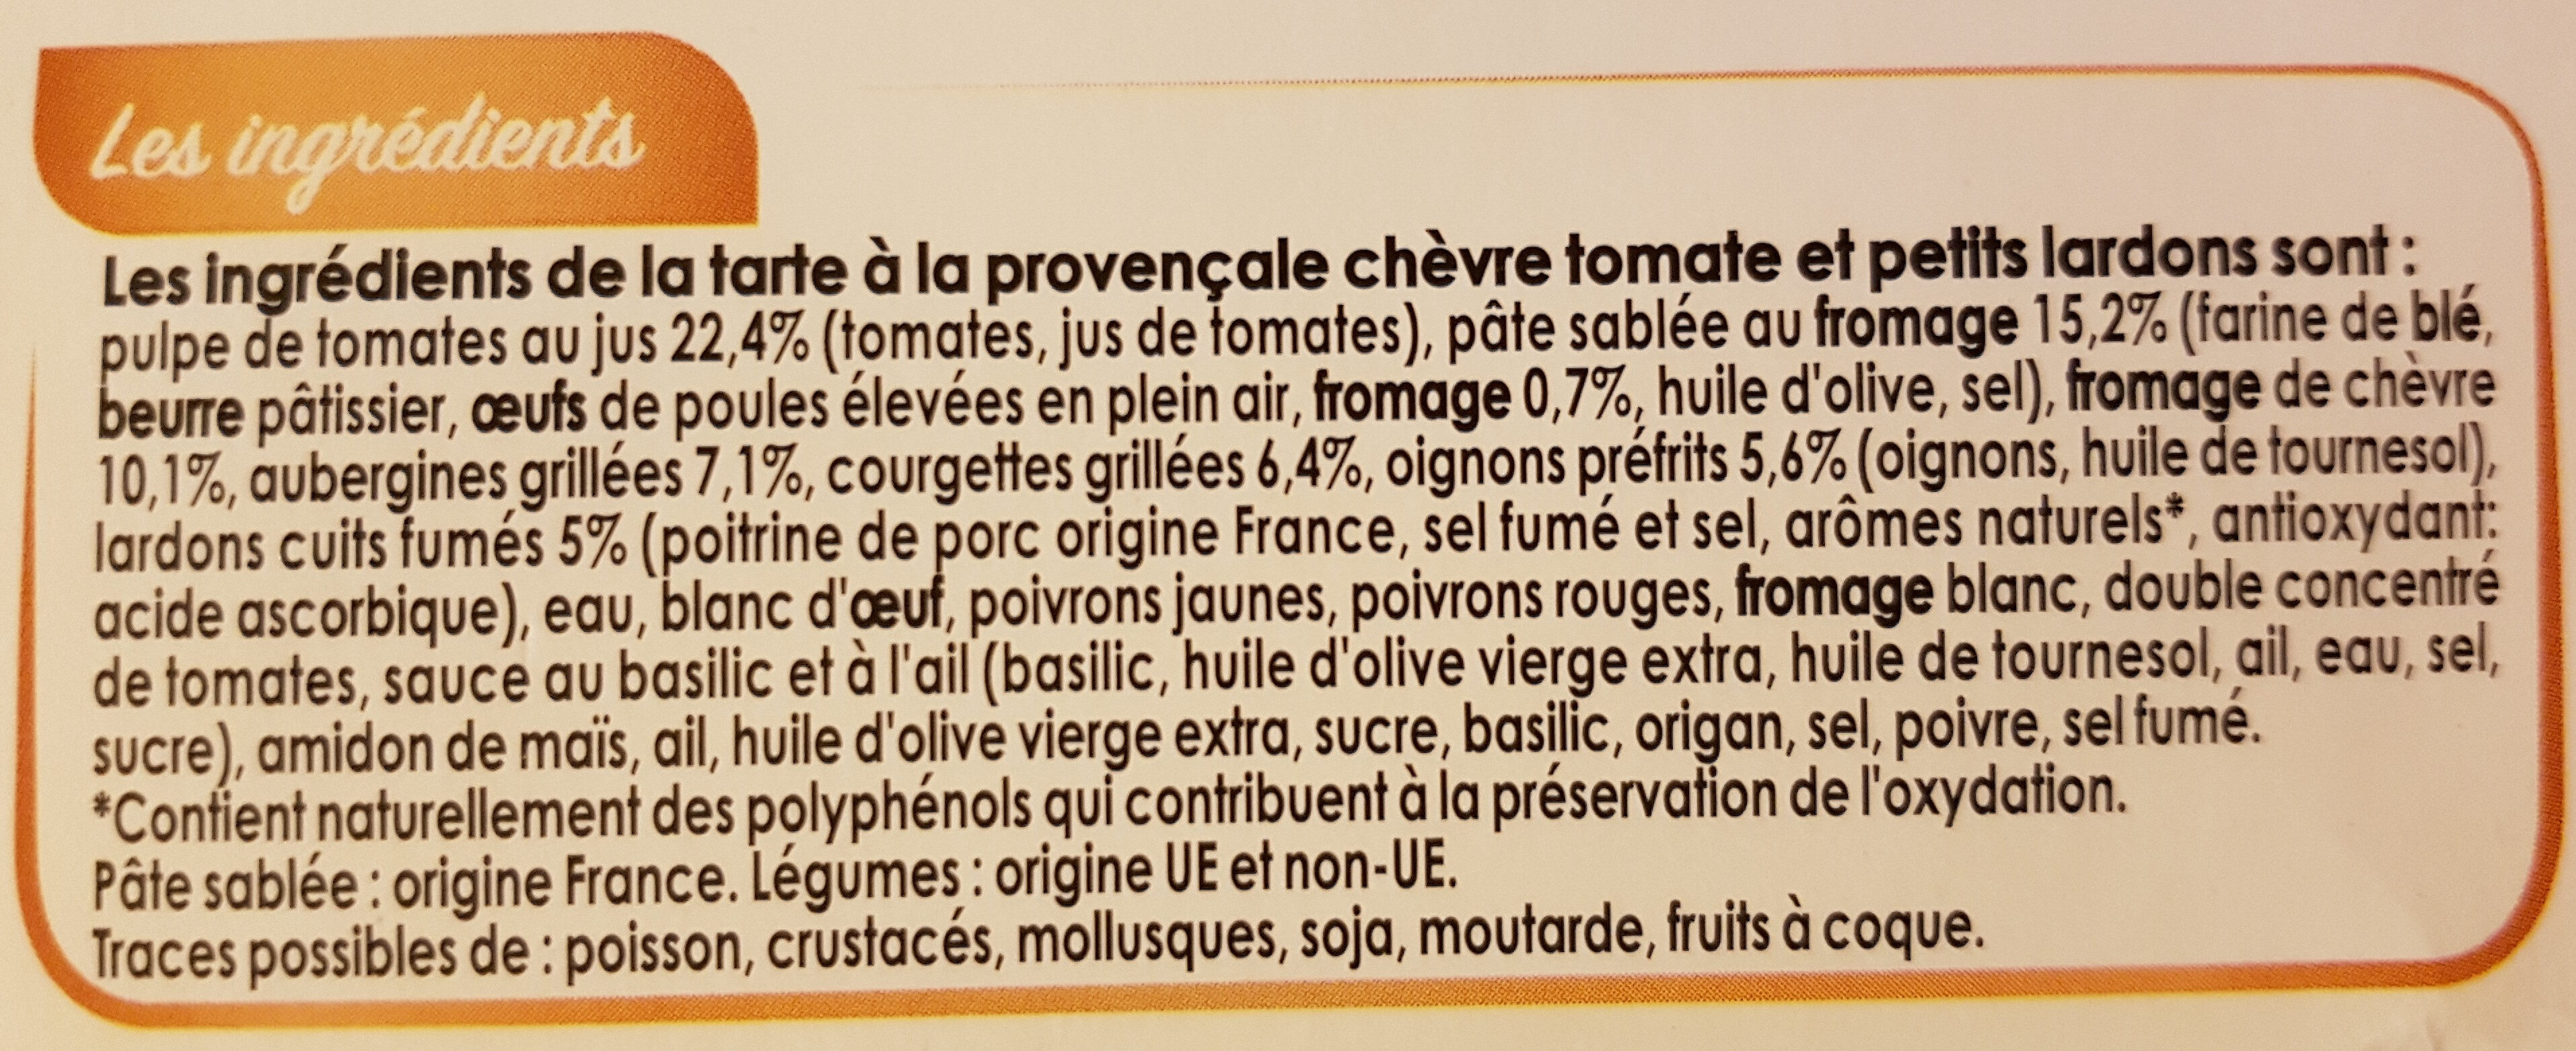 Tarte à la provençale chèvre tomate et petits lardons - Ingredientes - fr